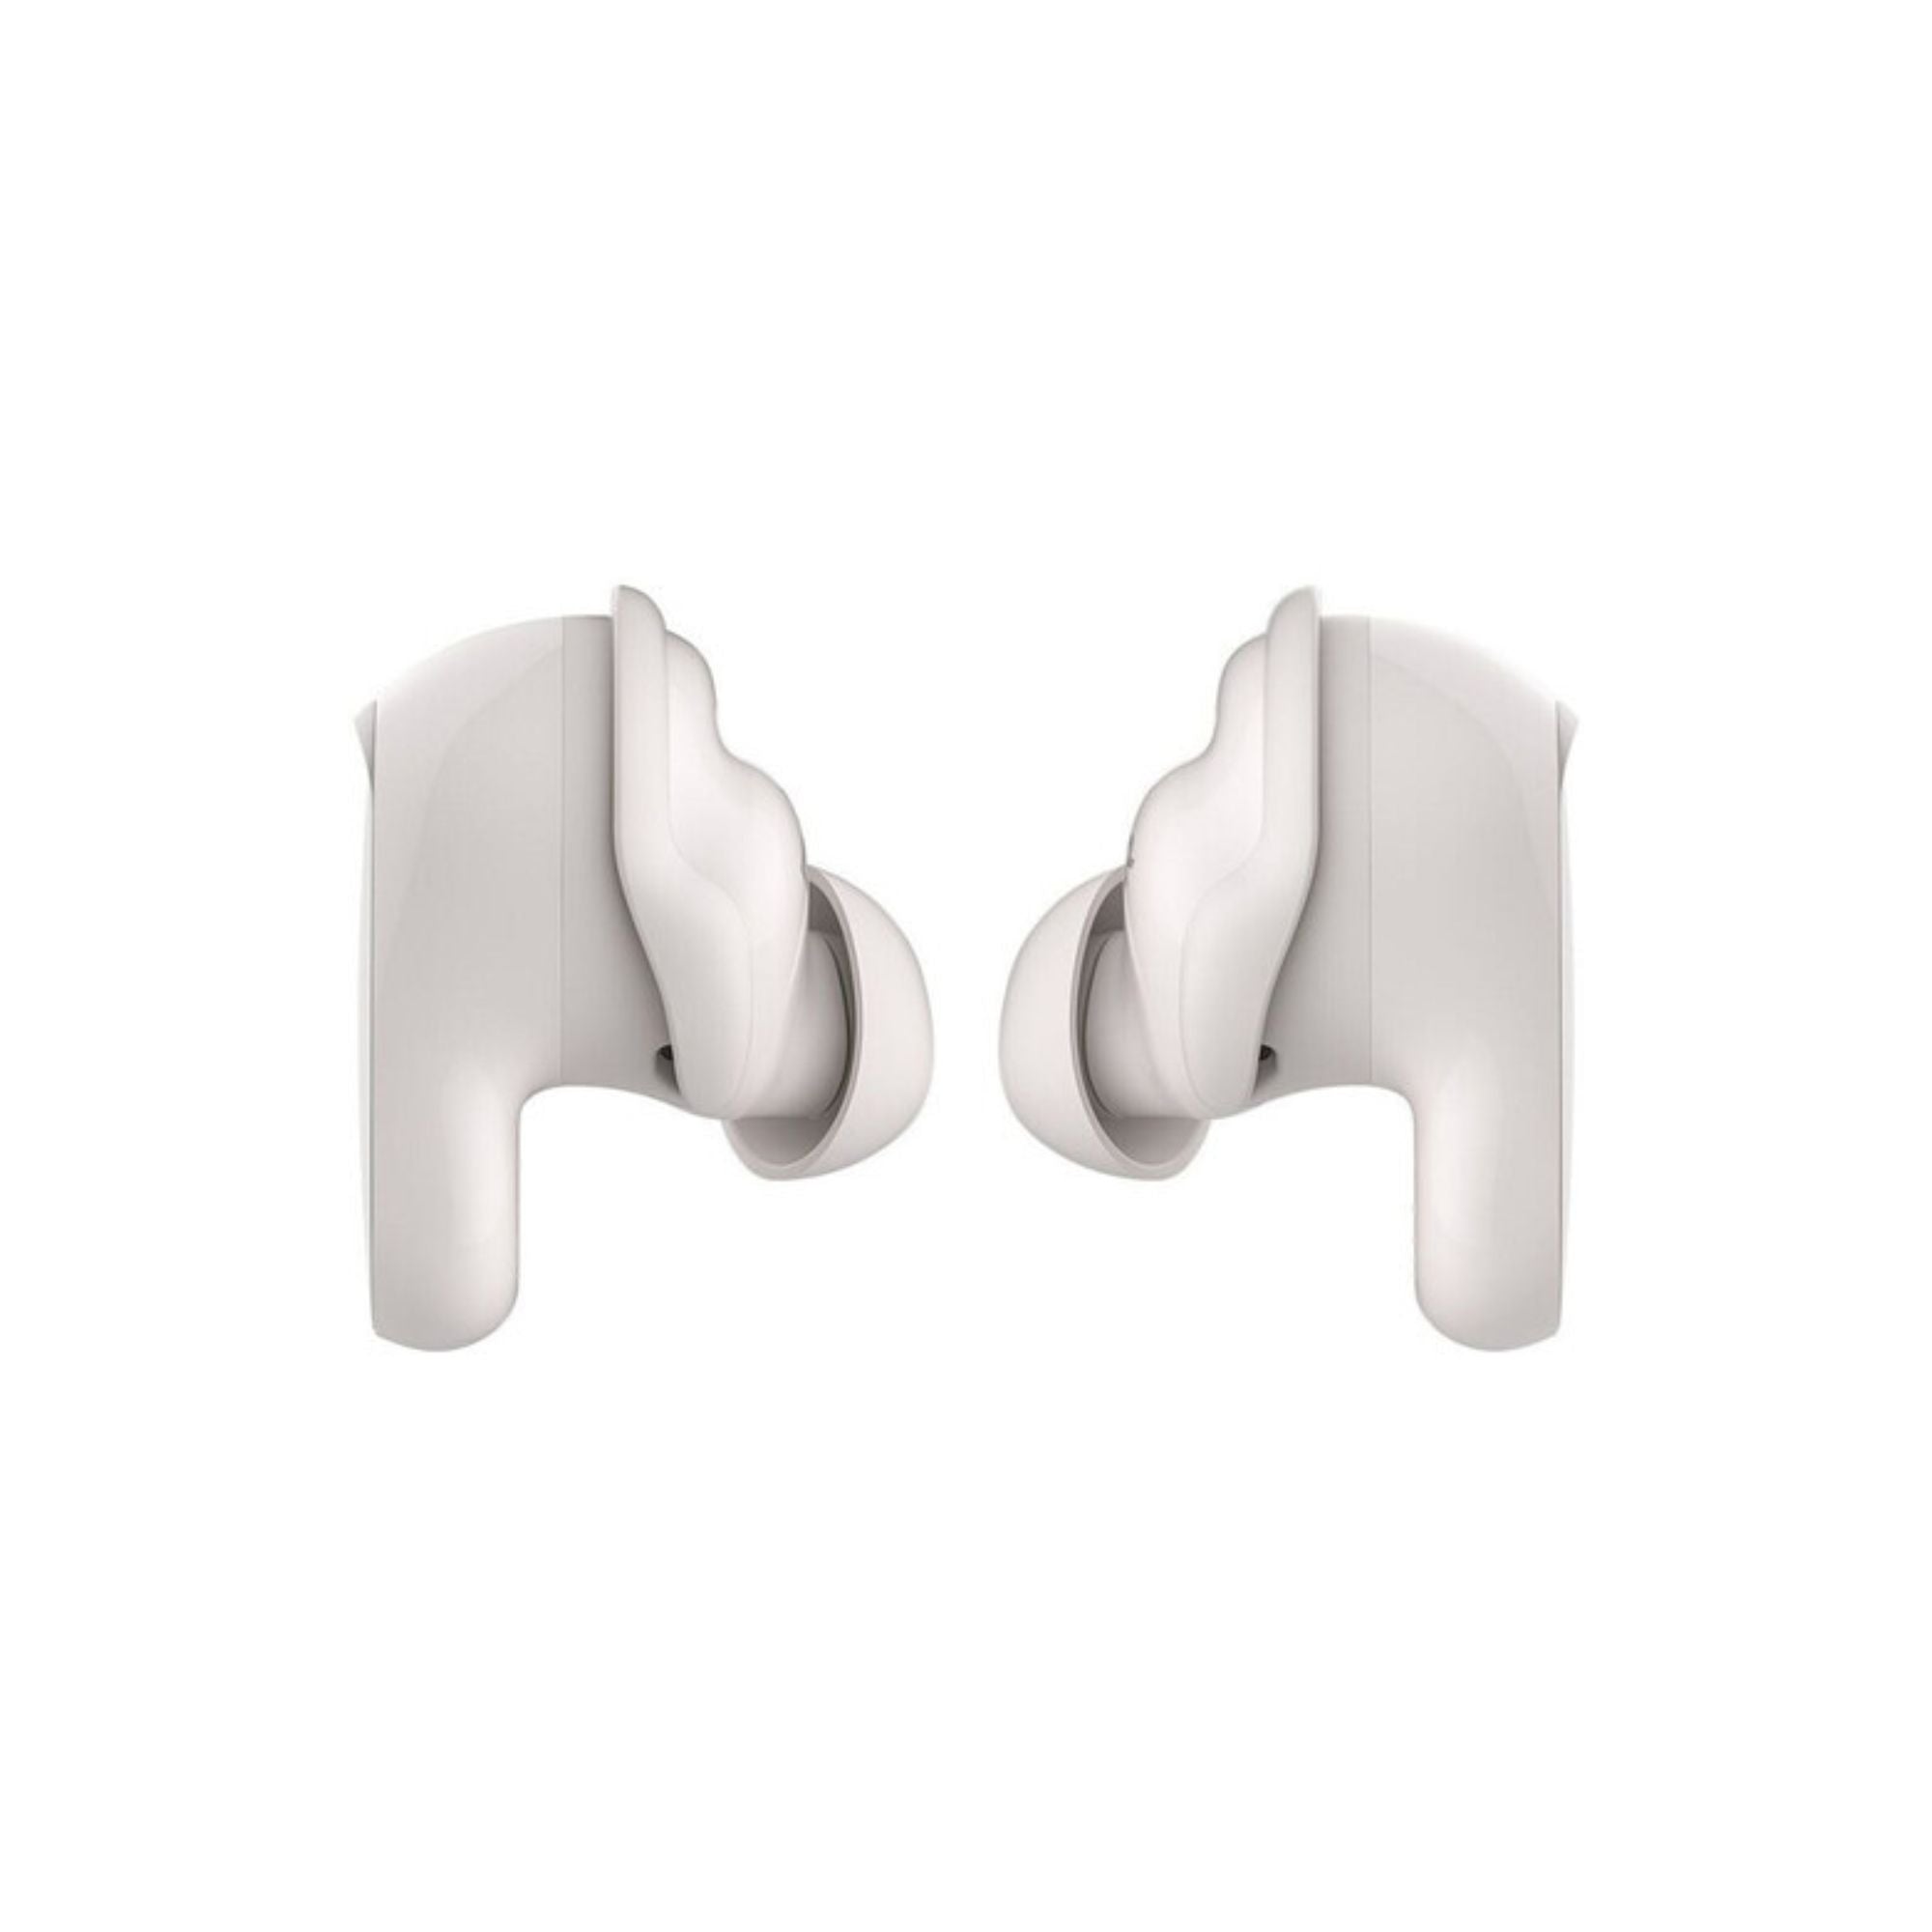 Bose QuietComfort Earbuds II Noise-Canceling True Wireless In-Ear Headphones, Bose, Wireless Headphones - AVStore.in